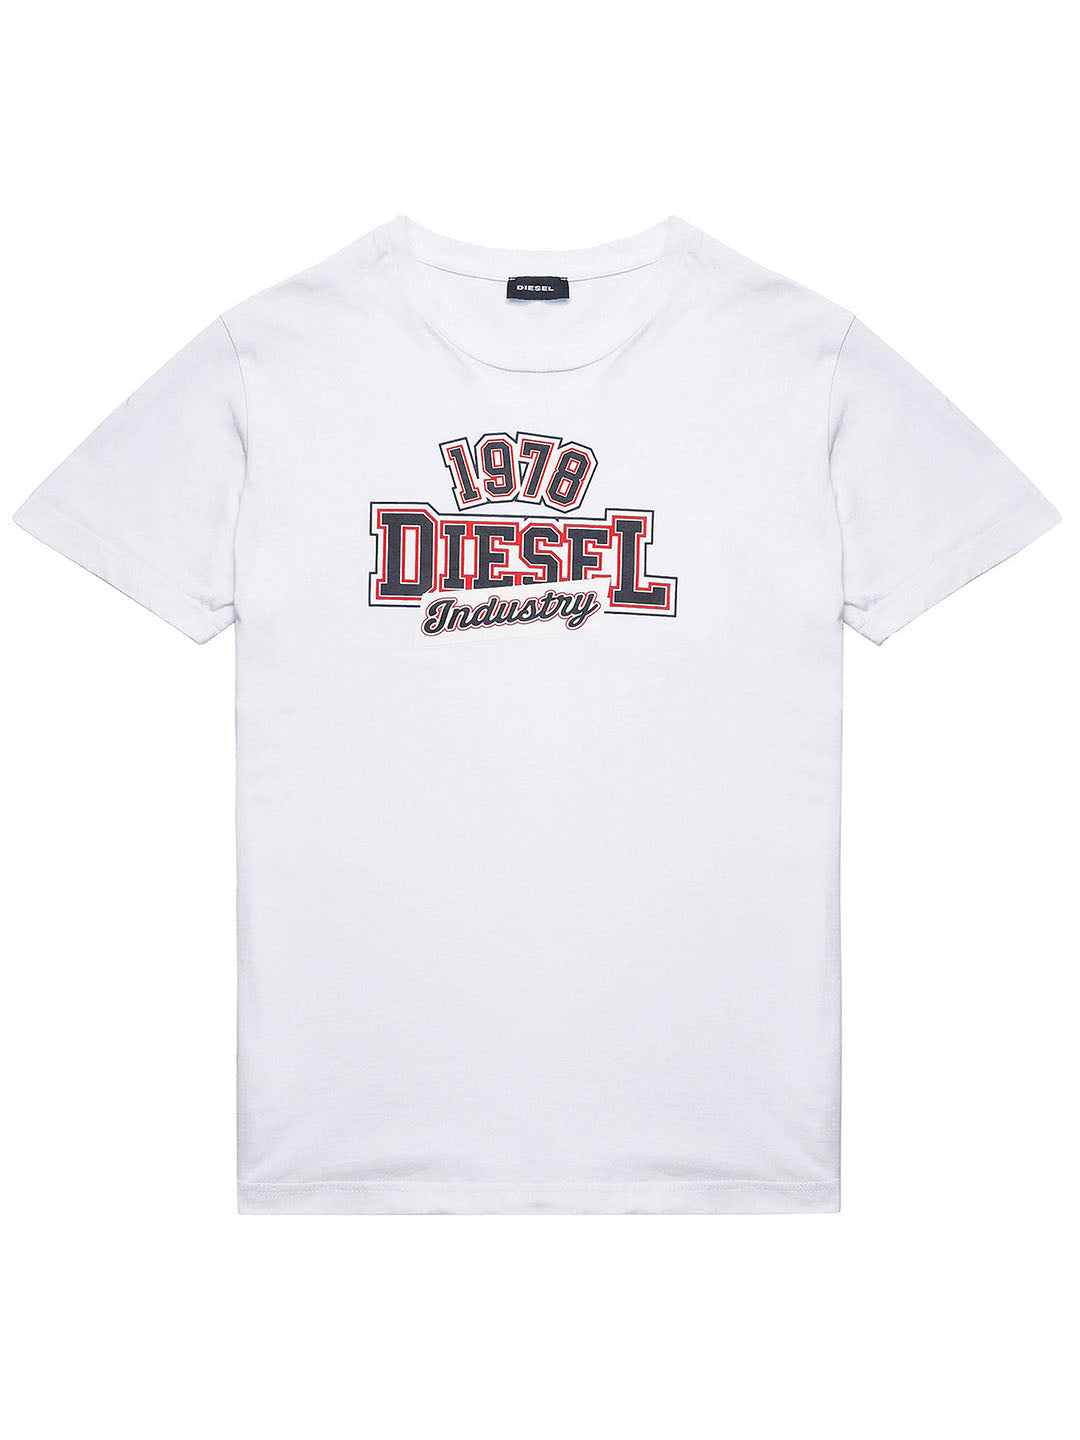 DIESEL 1978 white cotton T-shirt